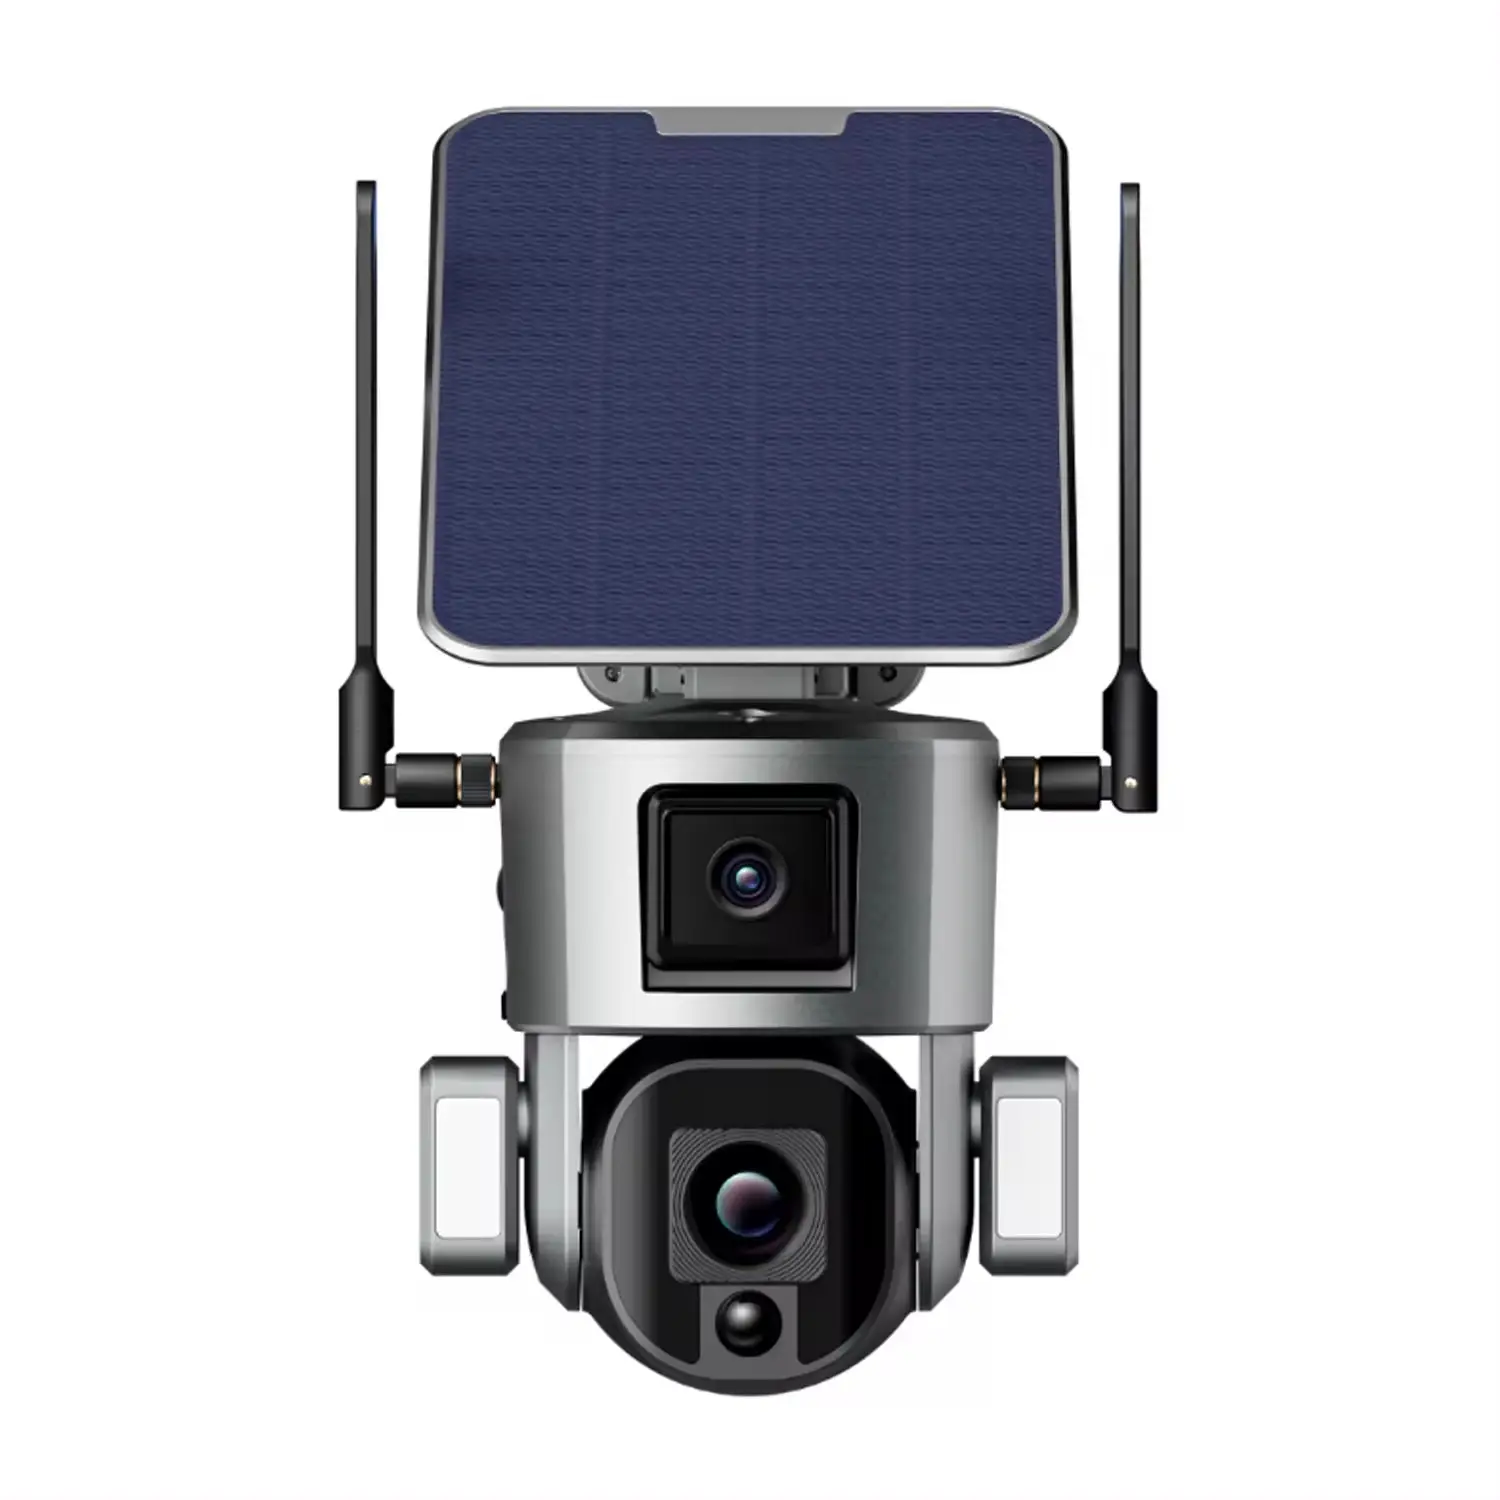 Câmera solar Ptz para uso ao ar livre, câmera com bateria de segurança inteligente, áudio bidirecional, sensores duplos de alta definição, venda imperdível